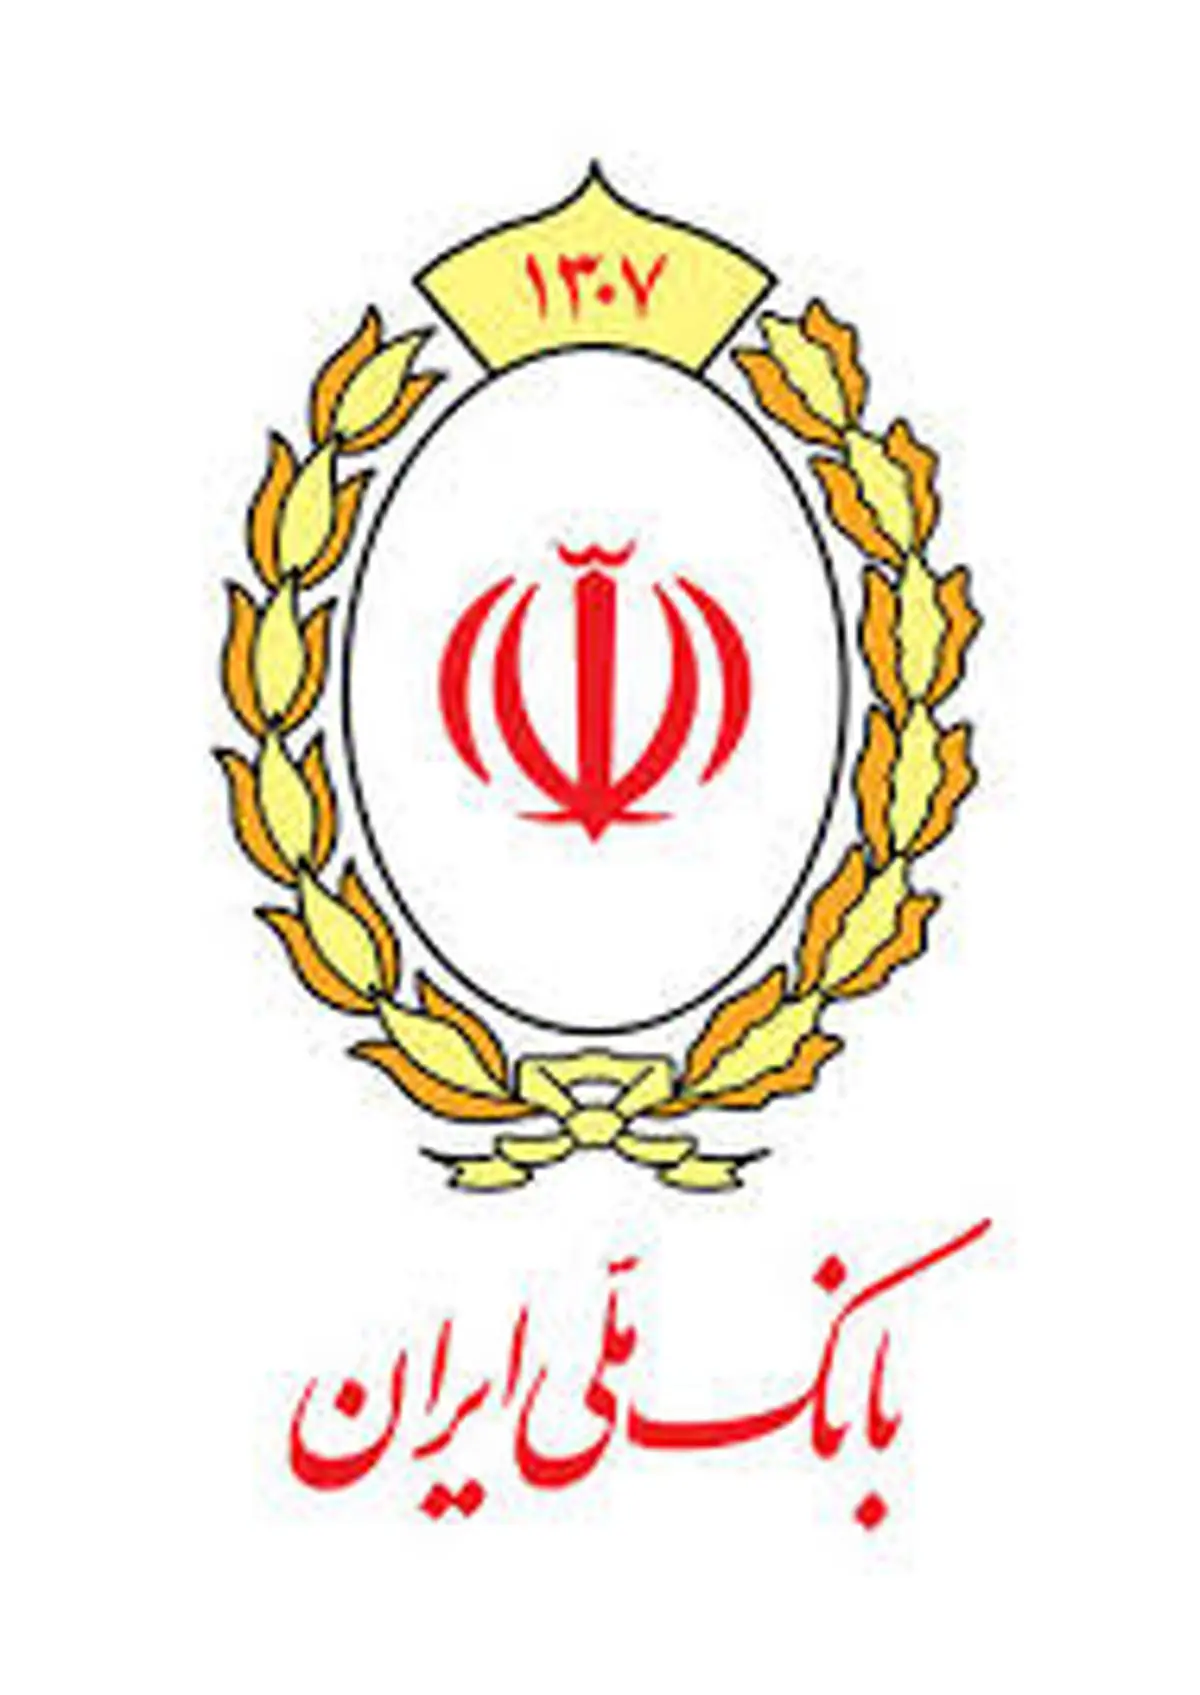 جایگاه مطلوب «ابزارهای پذیرش» بانک ملی ایران در گزارش شاپرک

